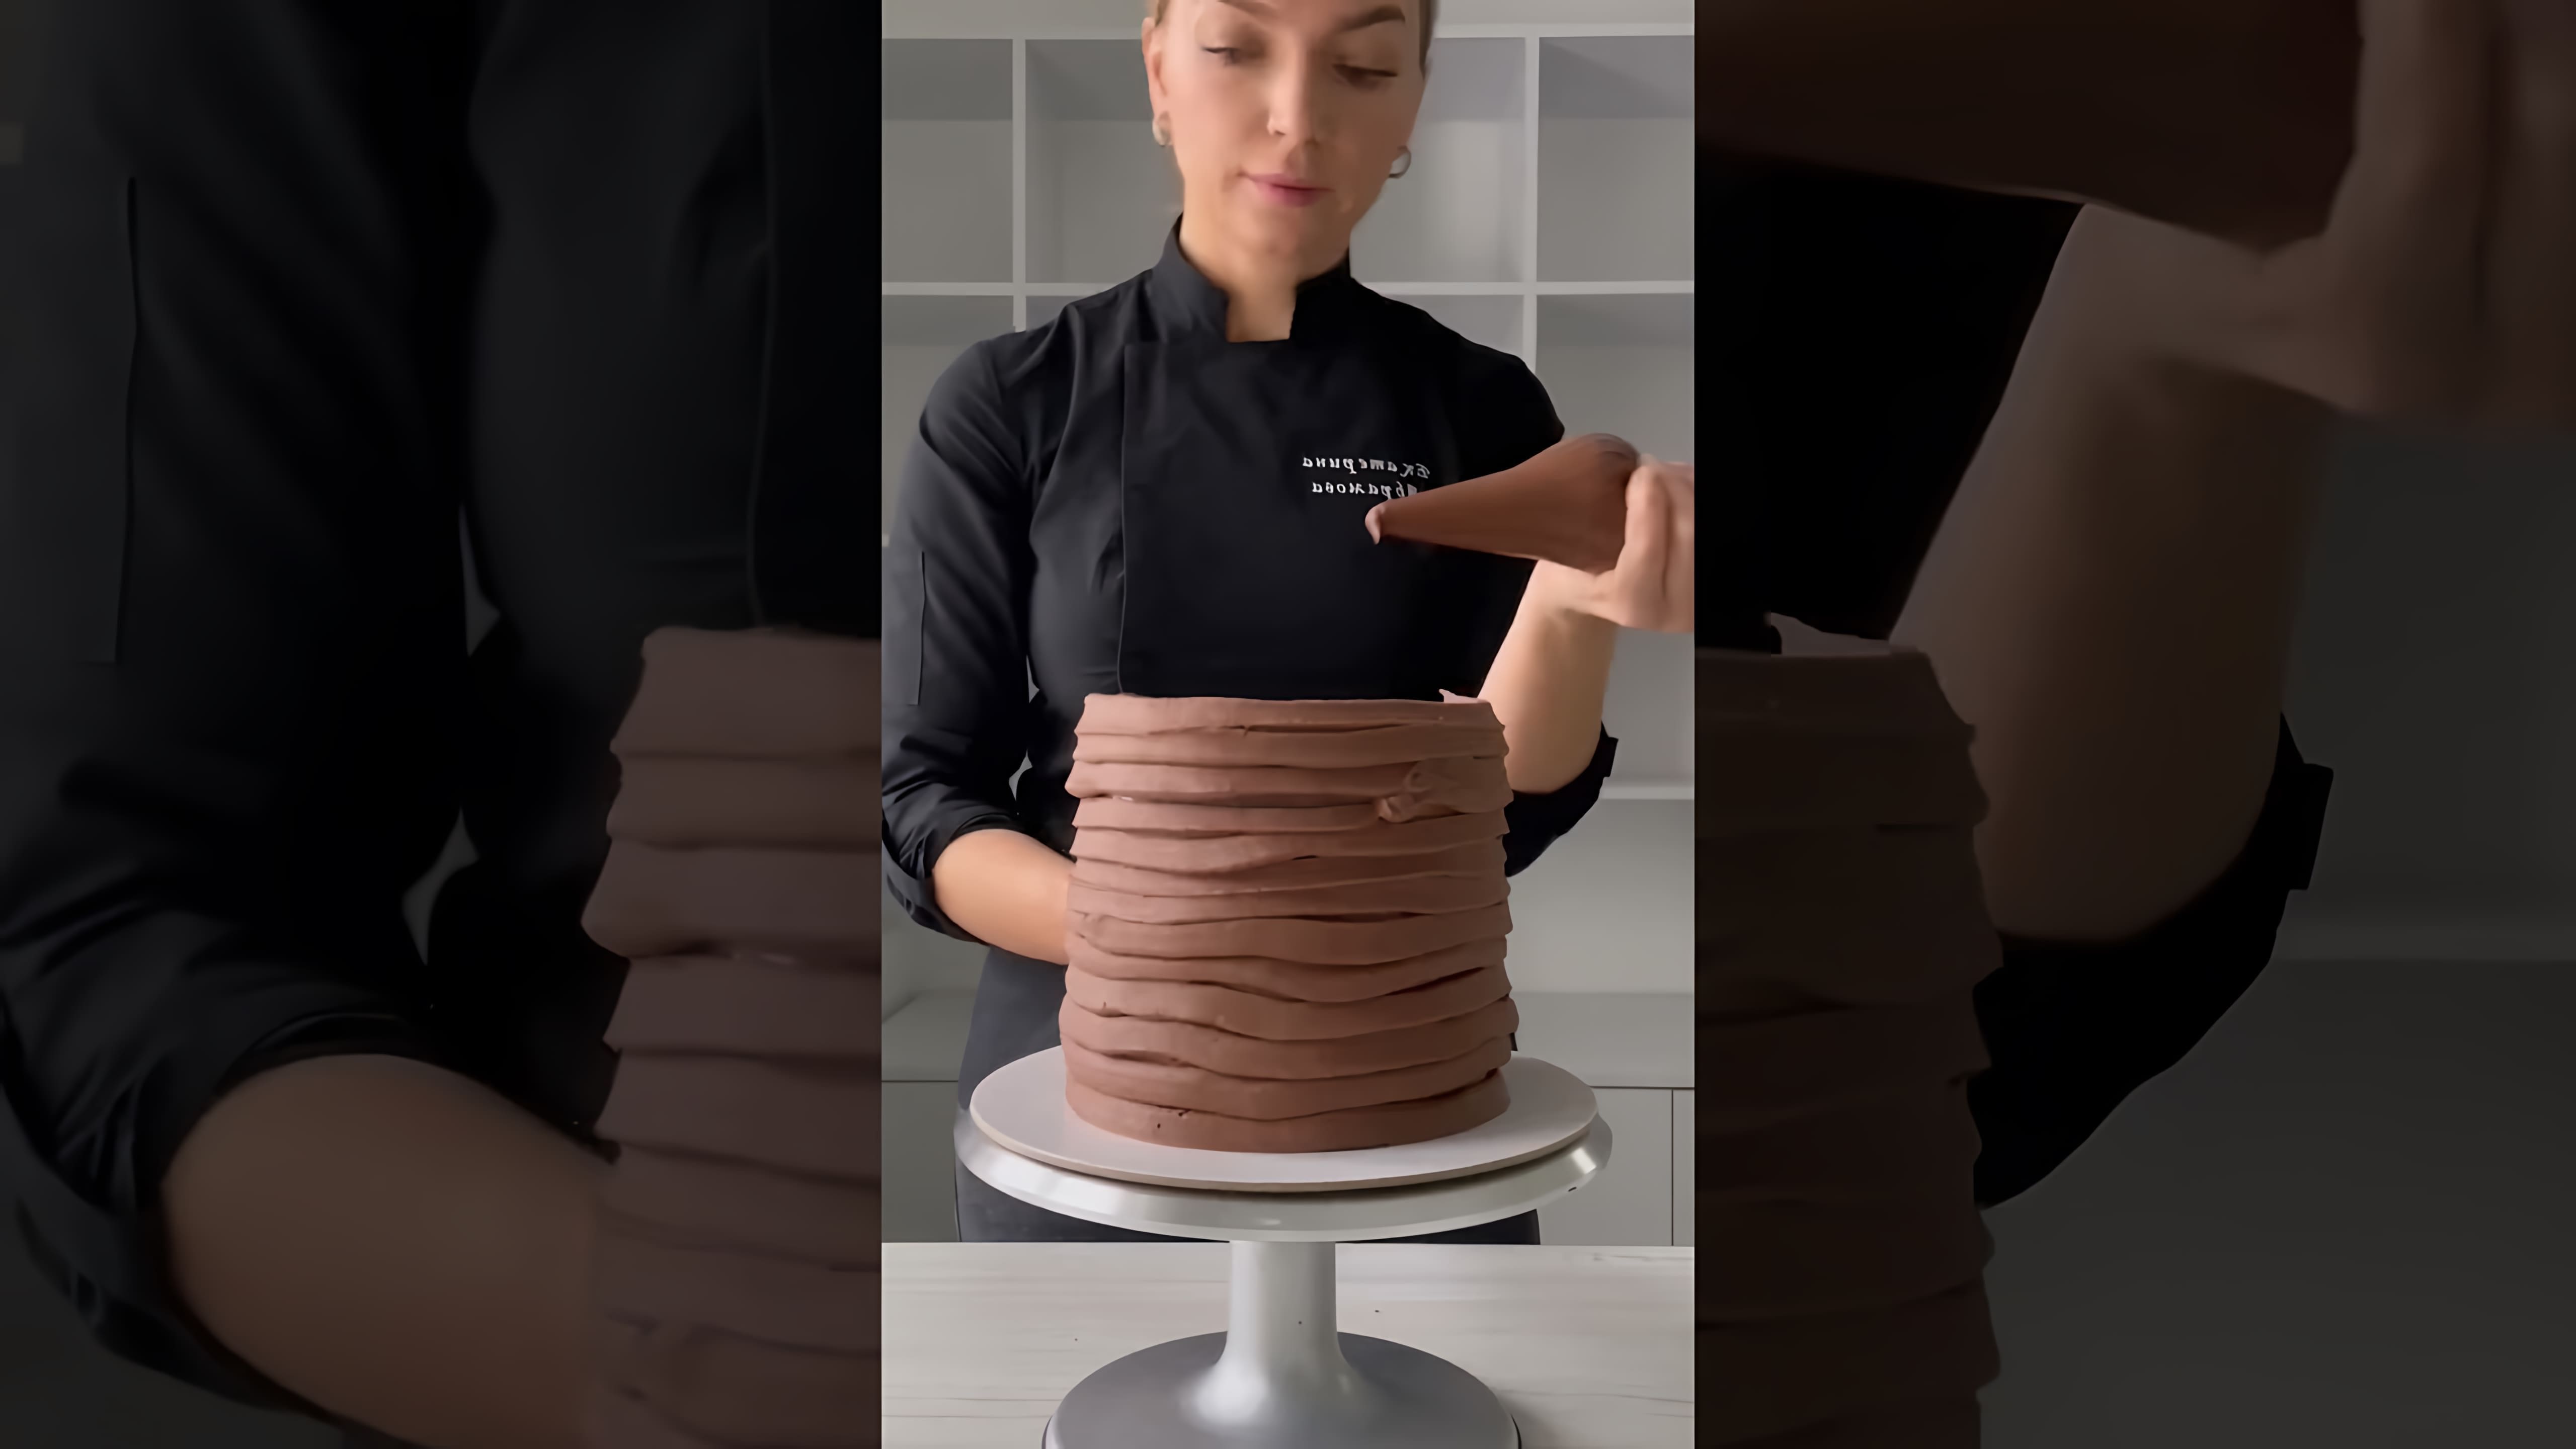 В этом видео демонстрируется процесс создания мужского торта, который был заказан клиенткой для своего мужа